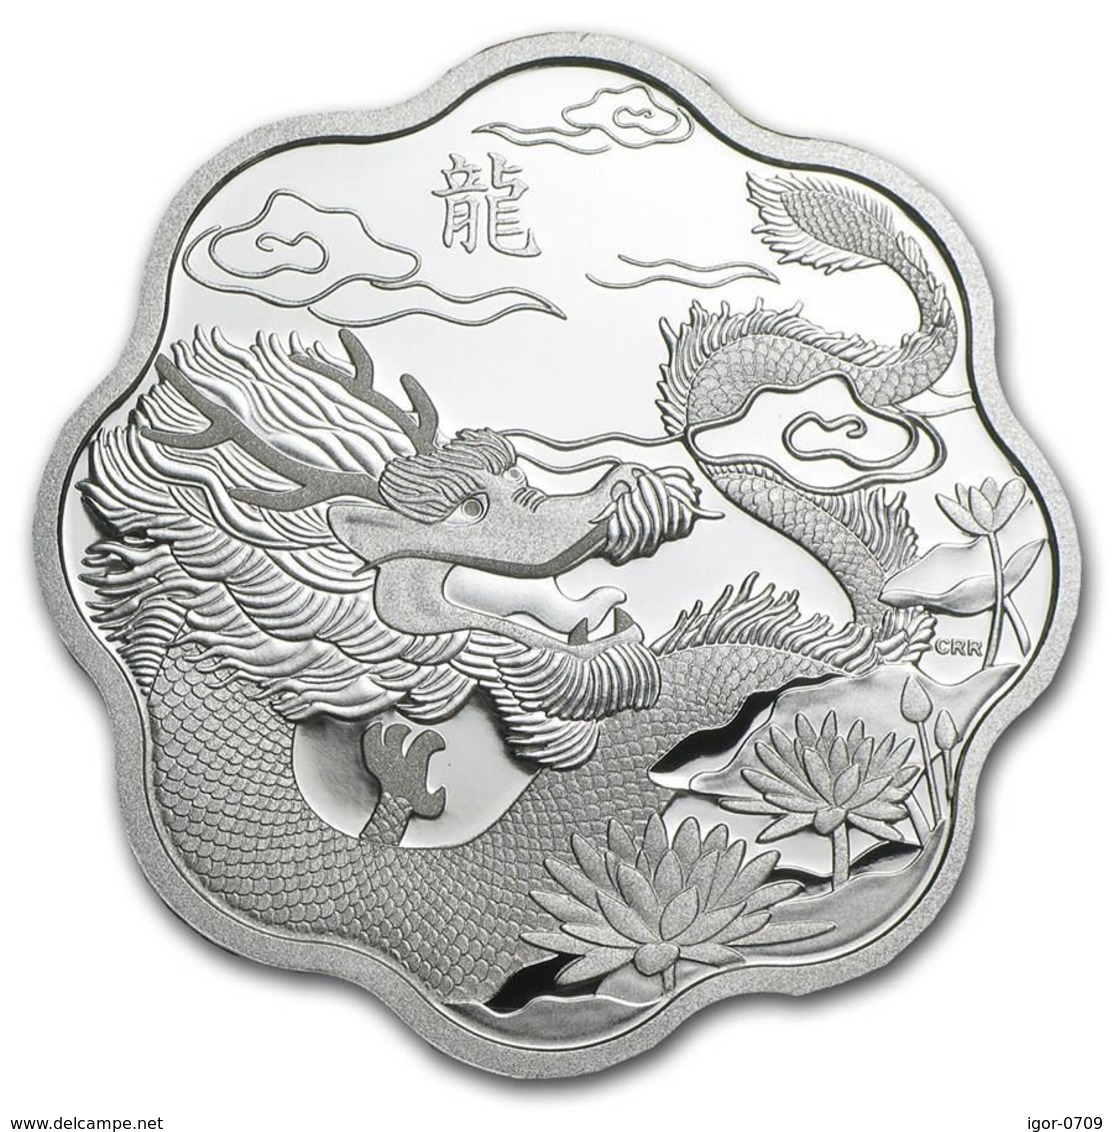 Yrear of Dragon  2012. Various monedas.  Silver .Original box and coa